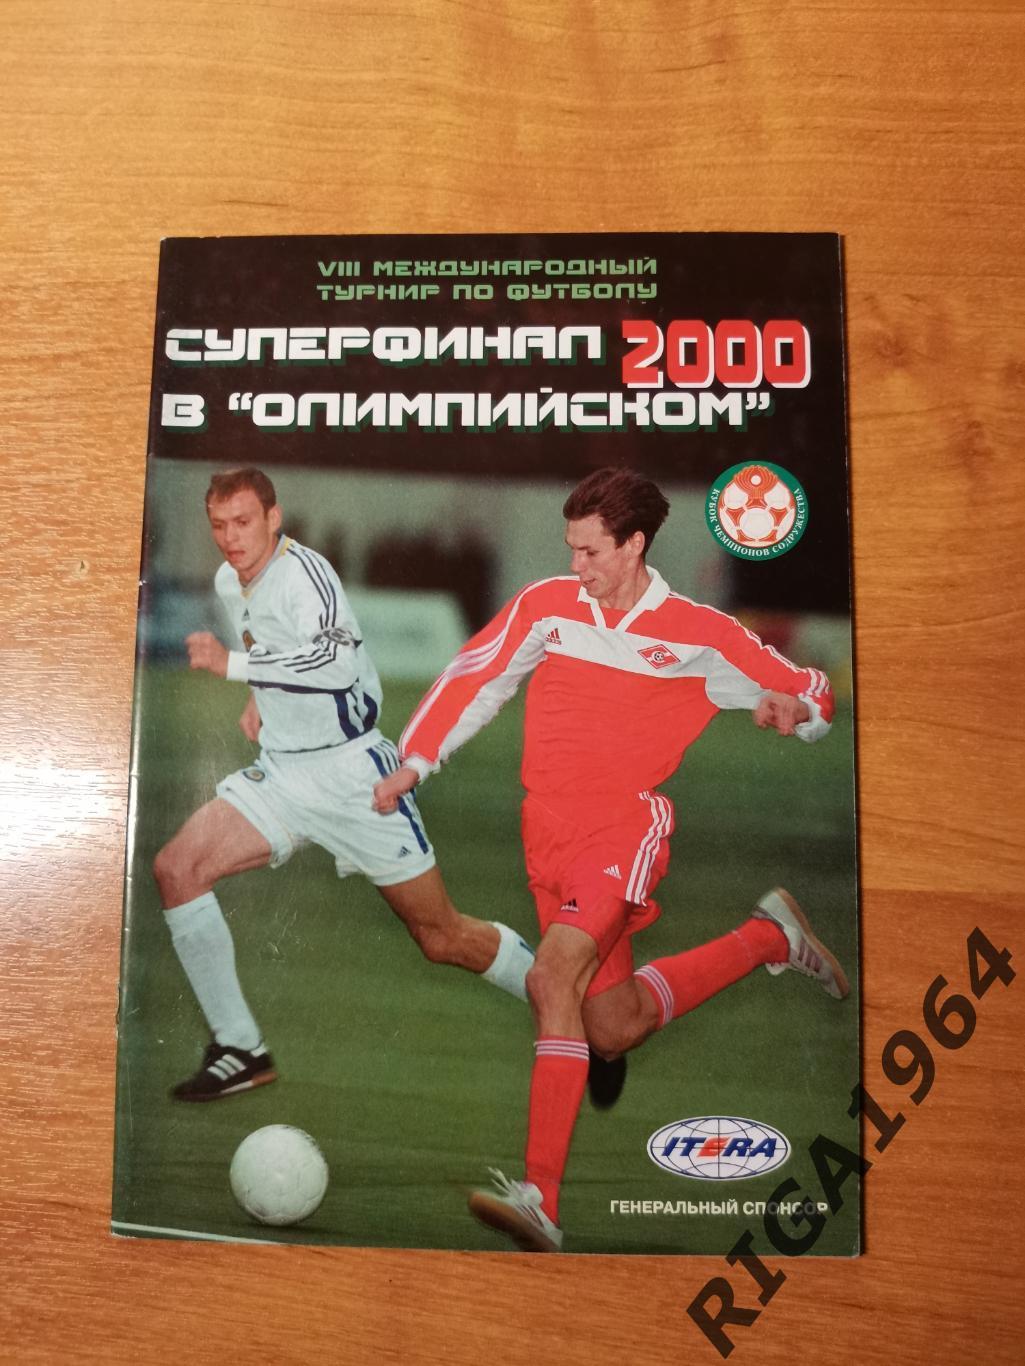 Кубок Содружества 2000 (уч. Россия U-19, Спартак М. )